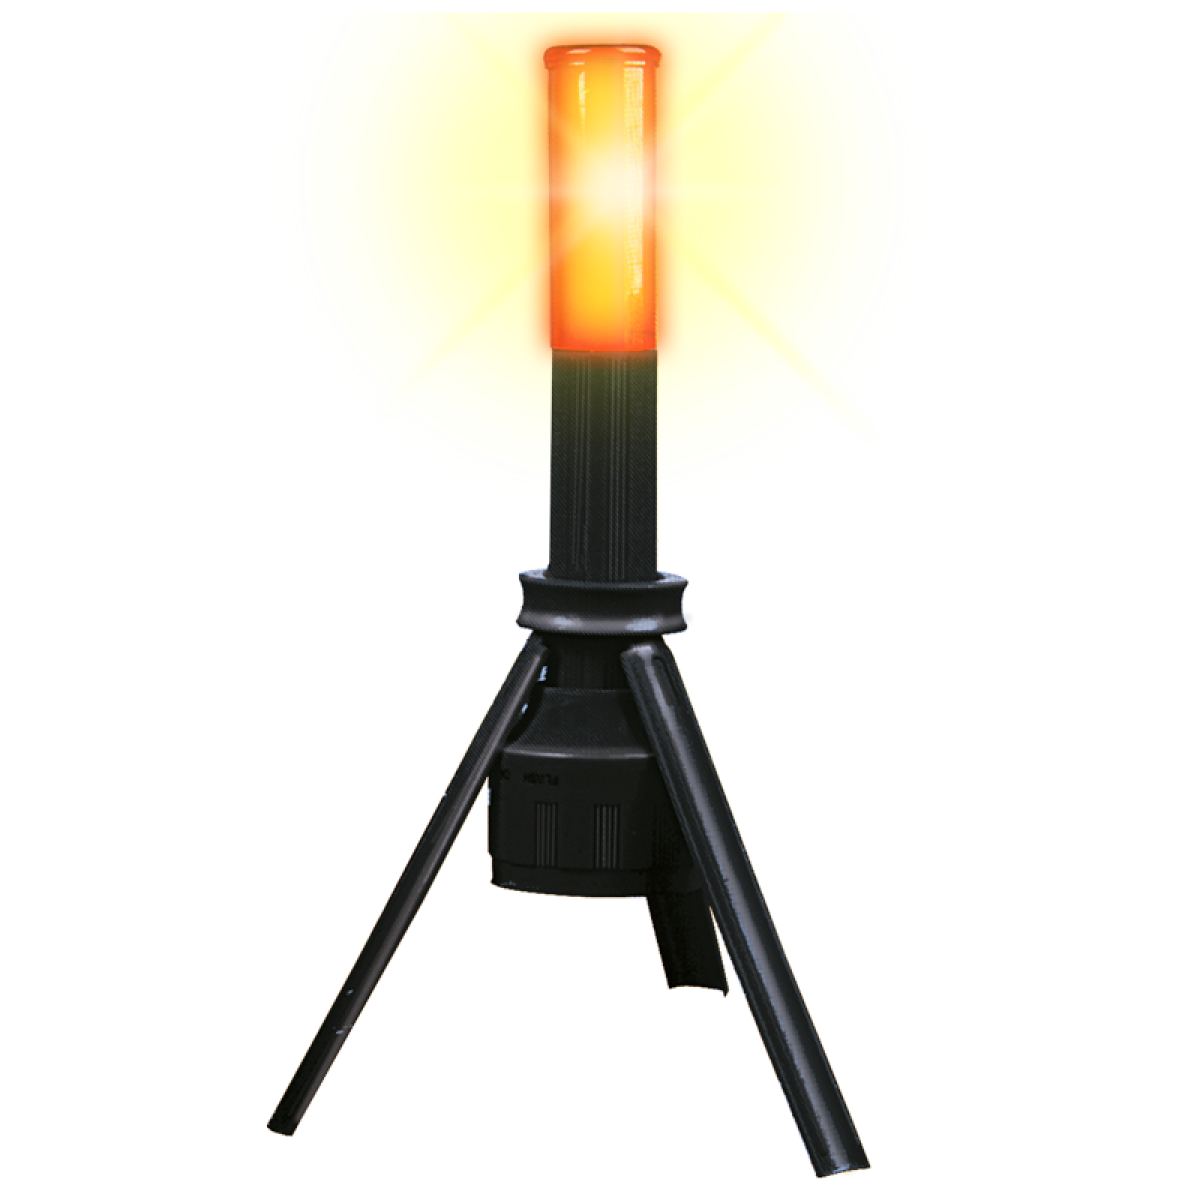 La lámpara trípode cuenta con luz fija e intermitente para brindar una mejor visibilidad en caso de emergencia. Visible hasta a 100 m. de distancia